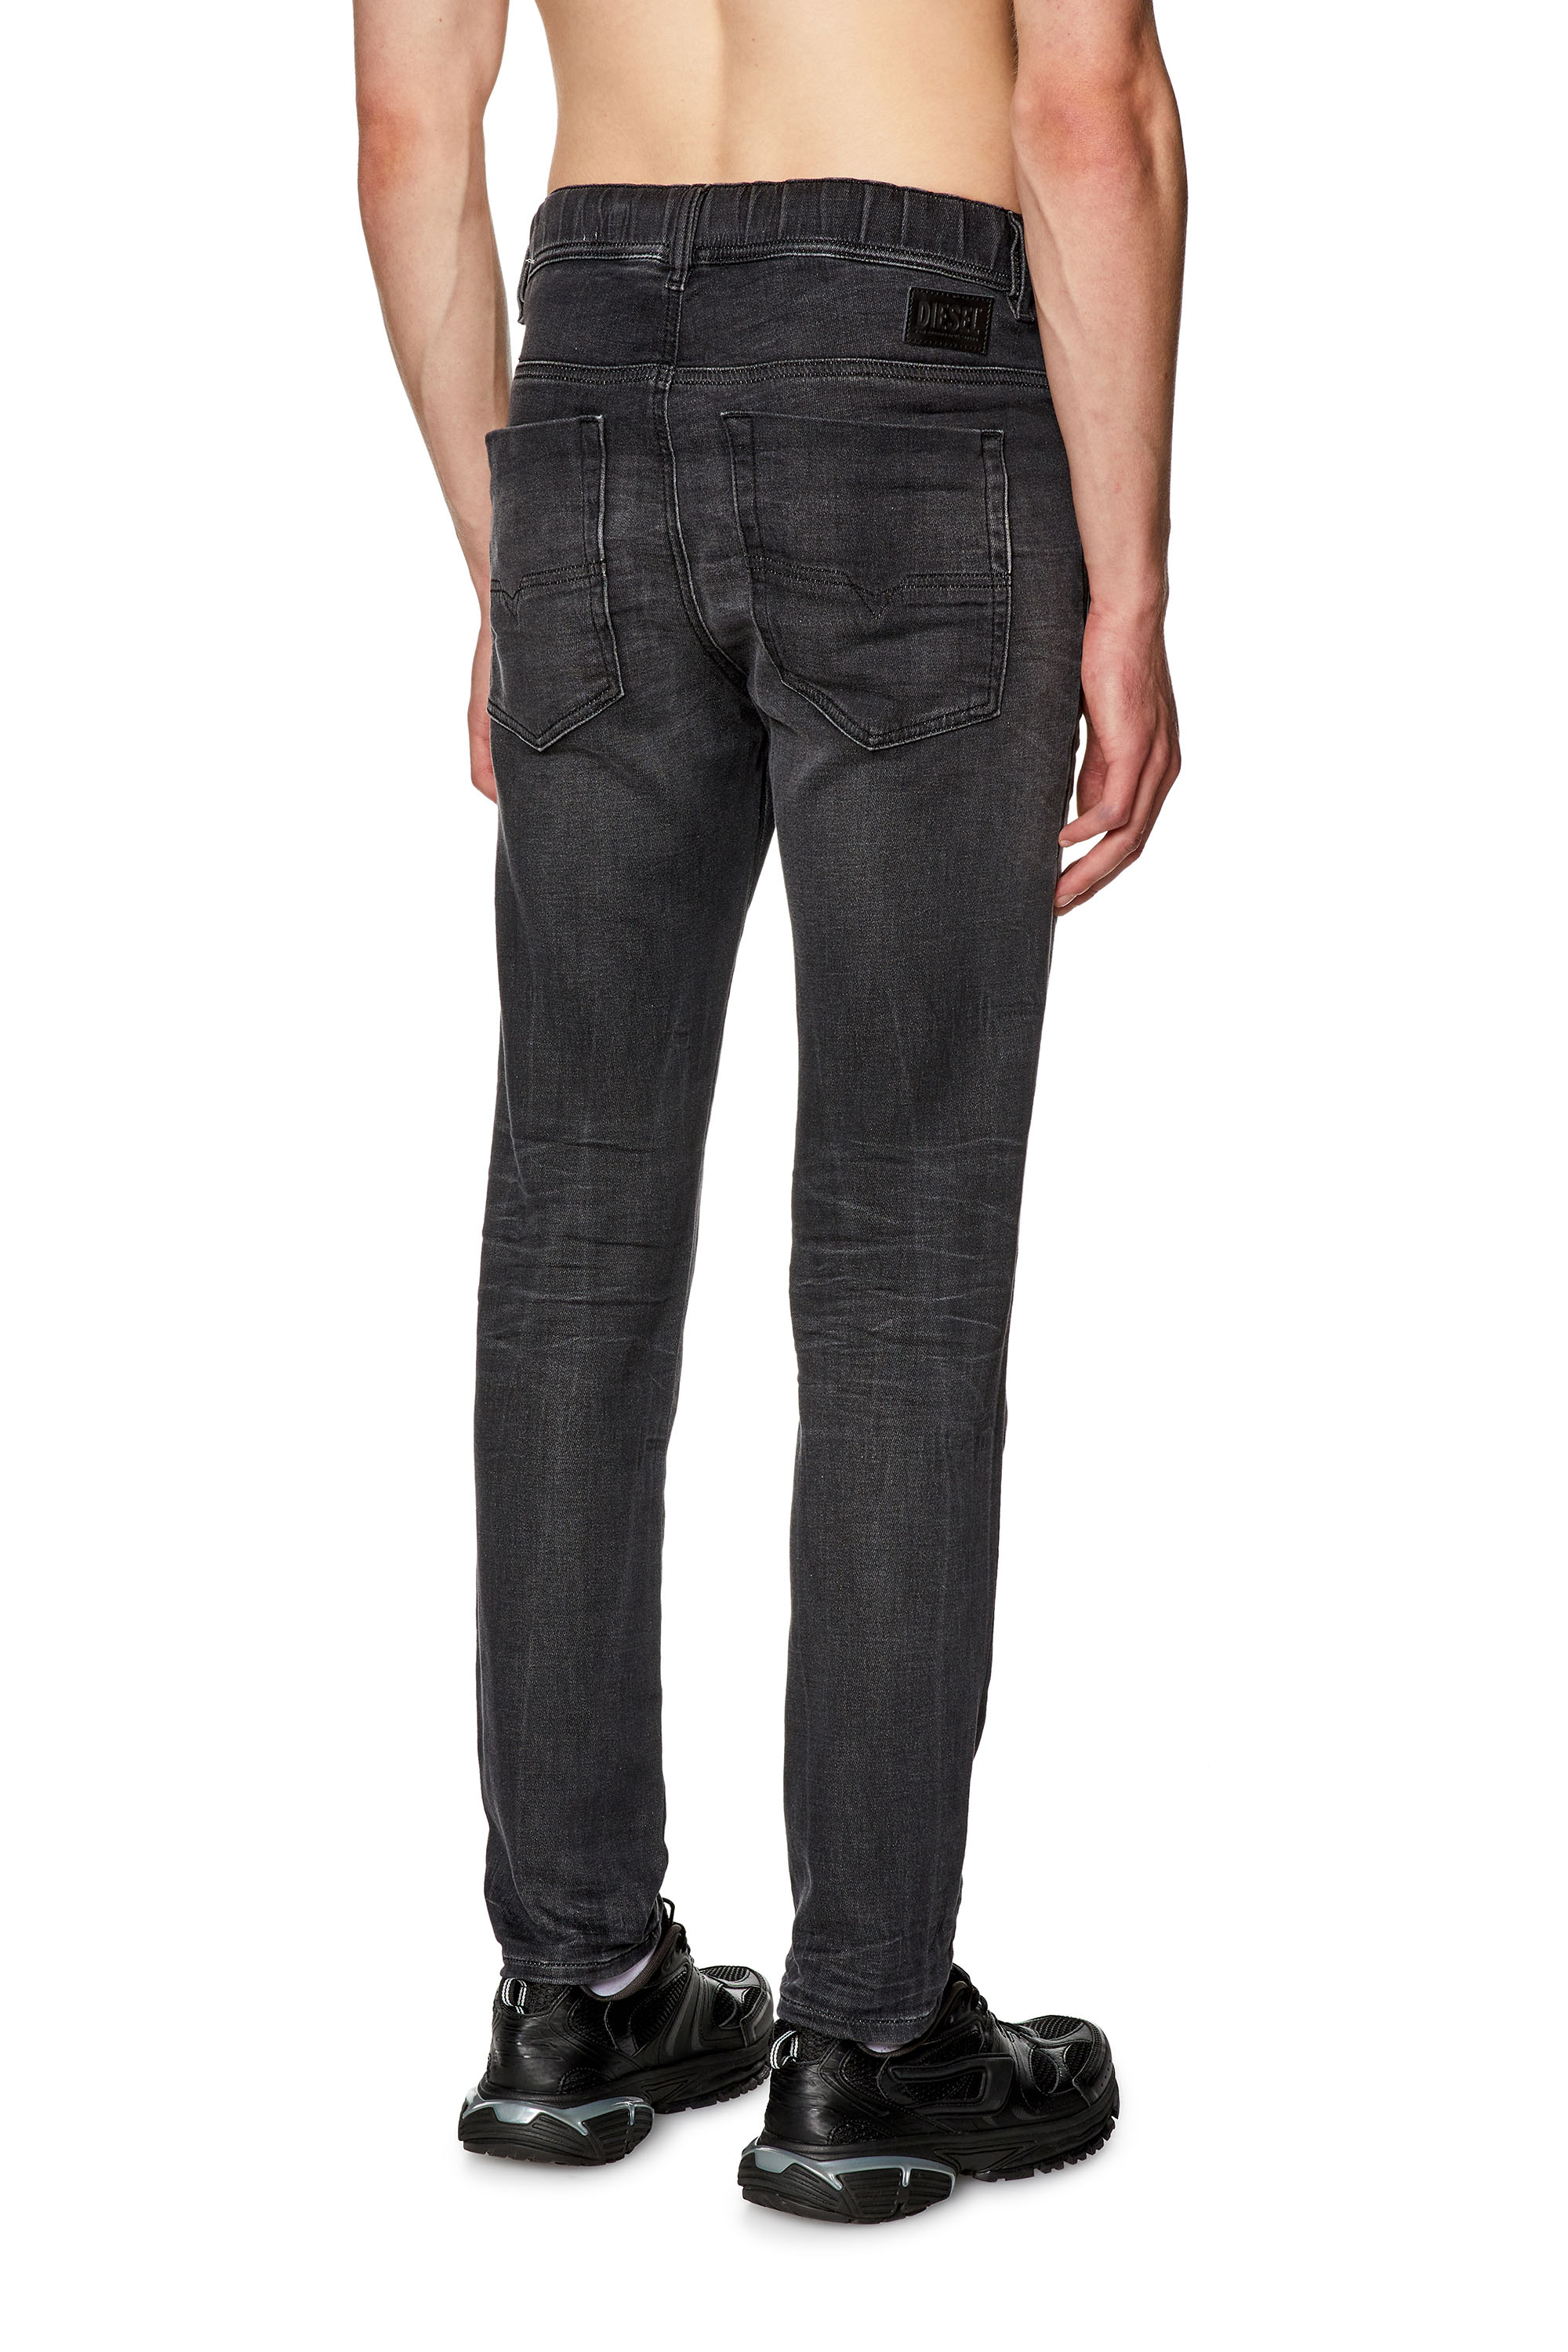 Diesel® E-Spender JoggJeans | Men's Slim Jeans: Elasticated